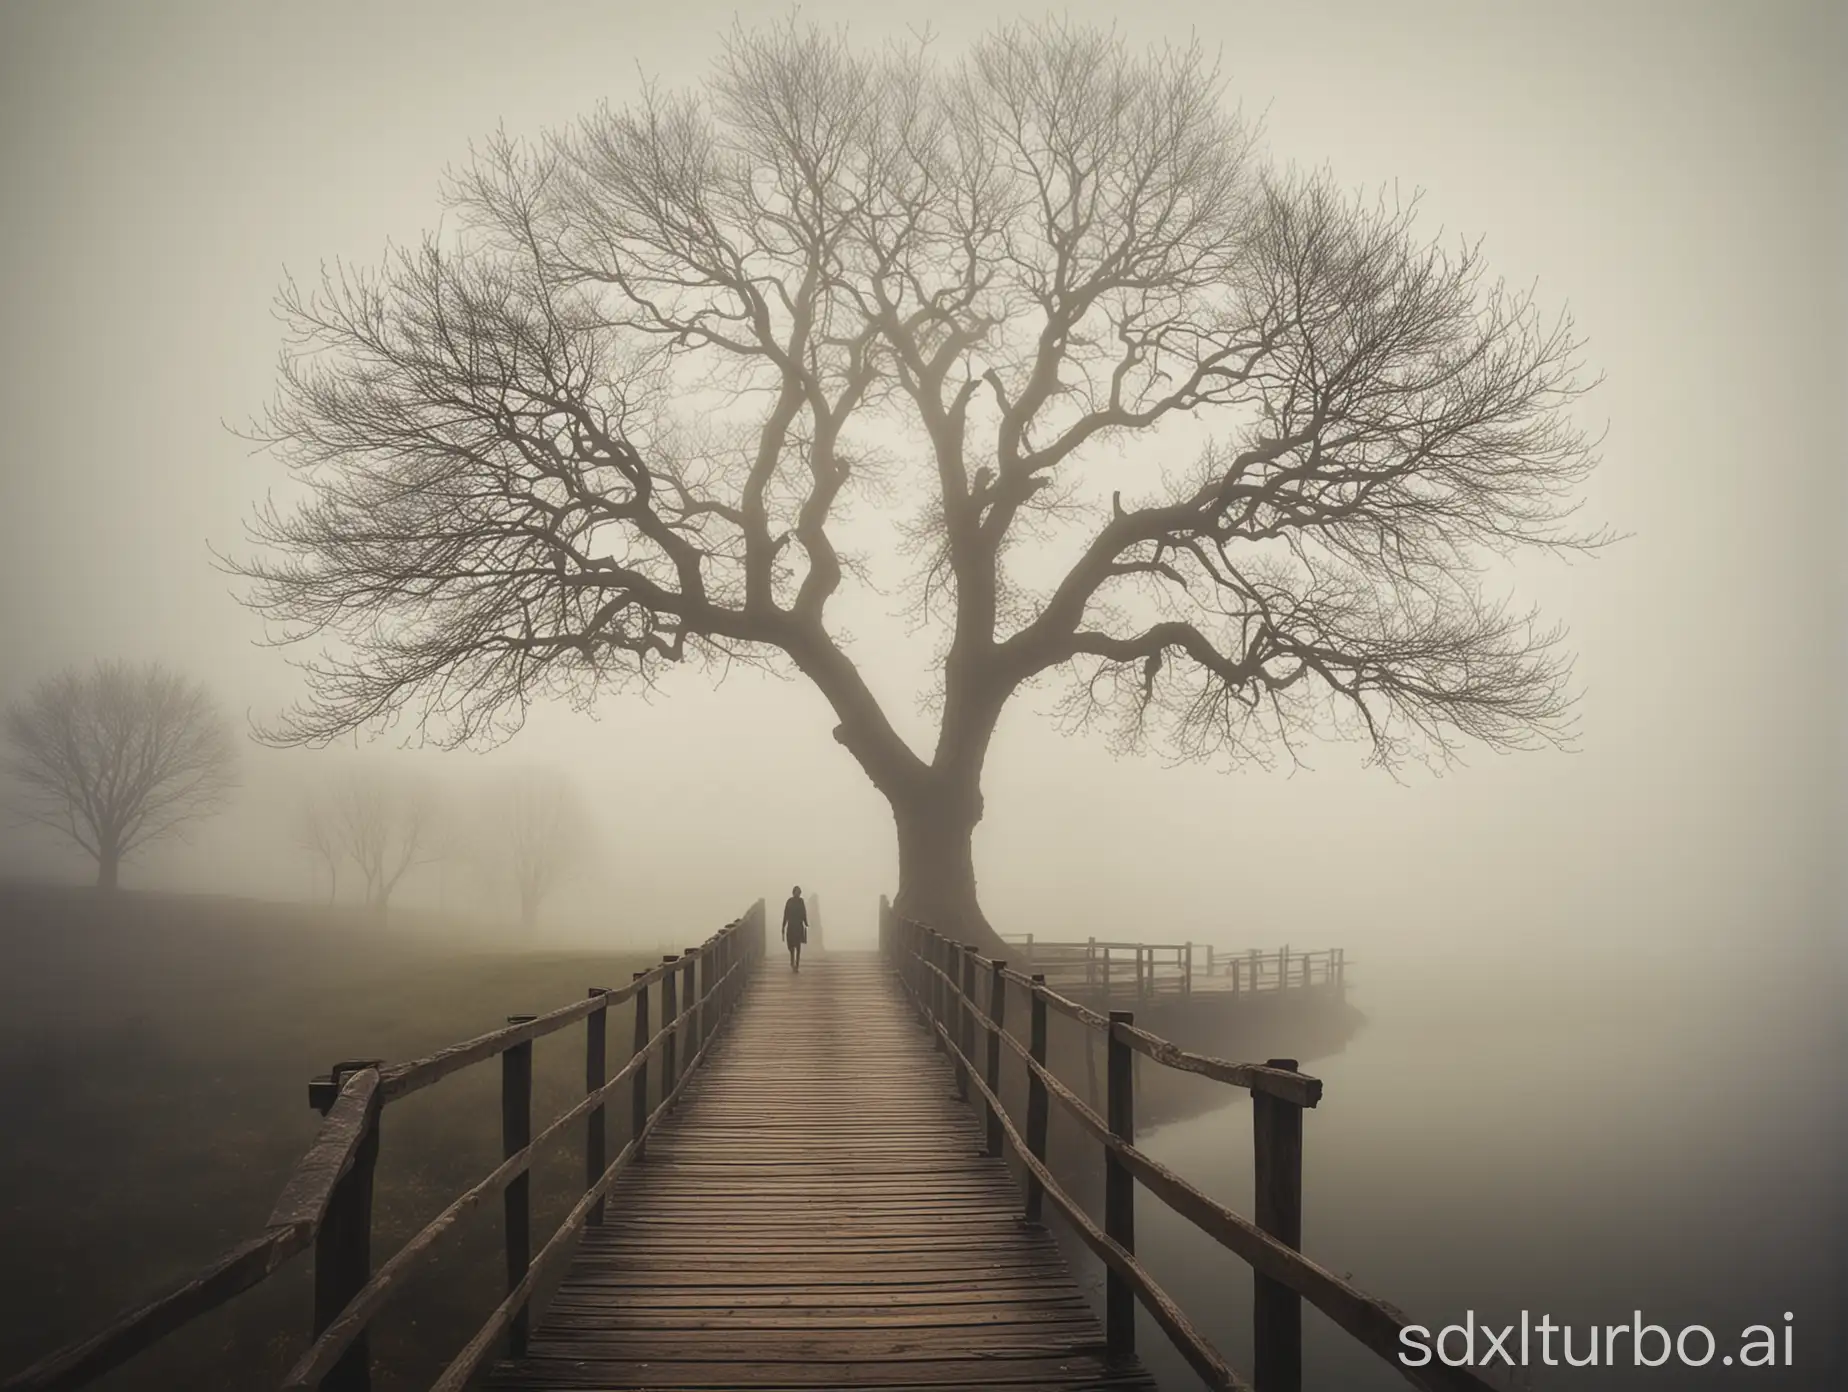 Mystische Landschaft, Nebel, Baum, Person, Brücke